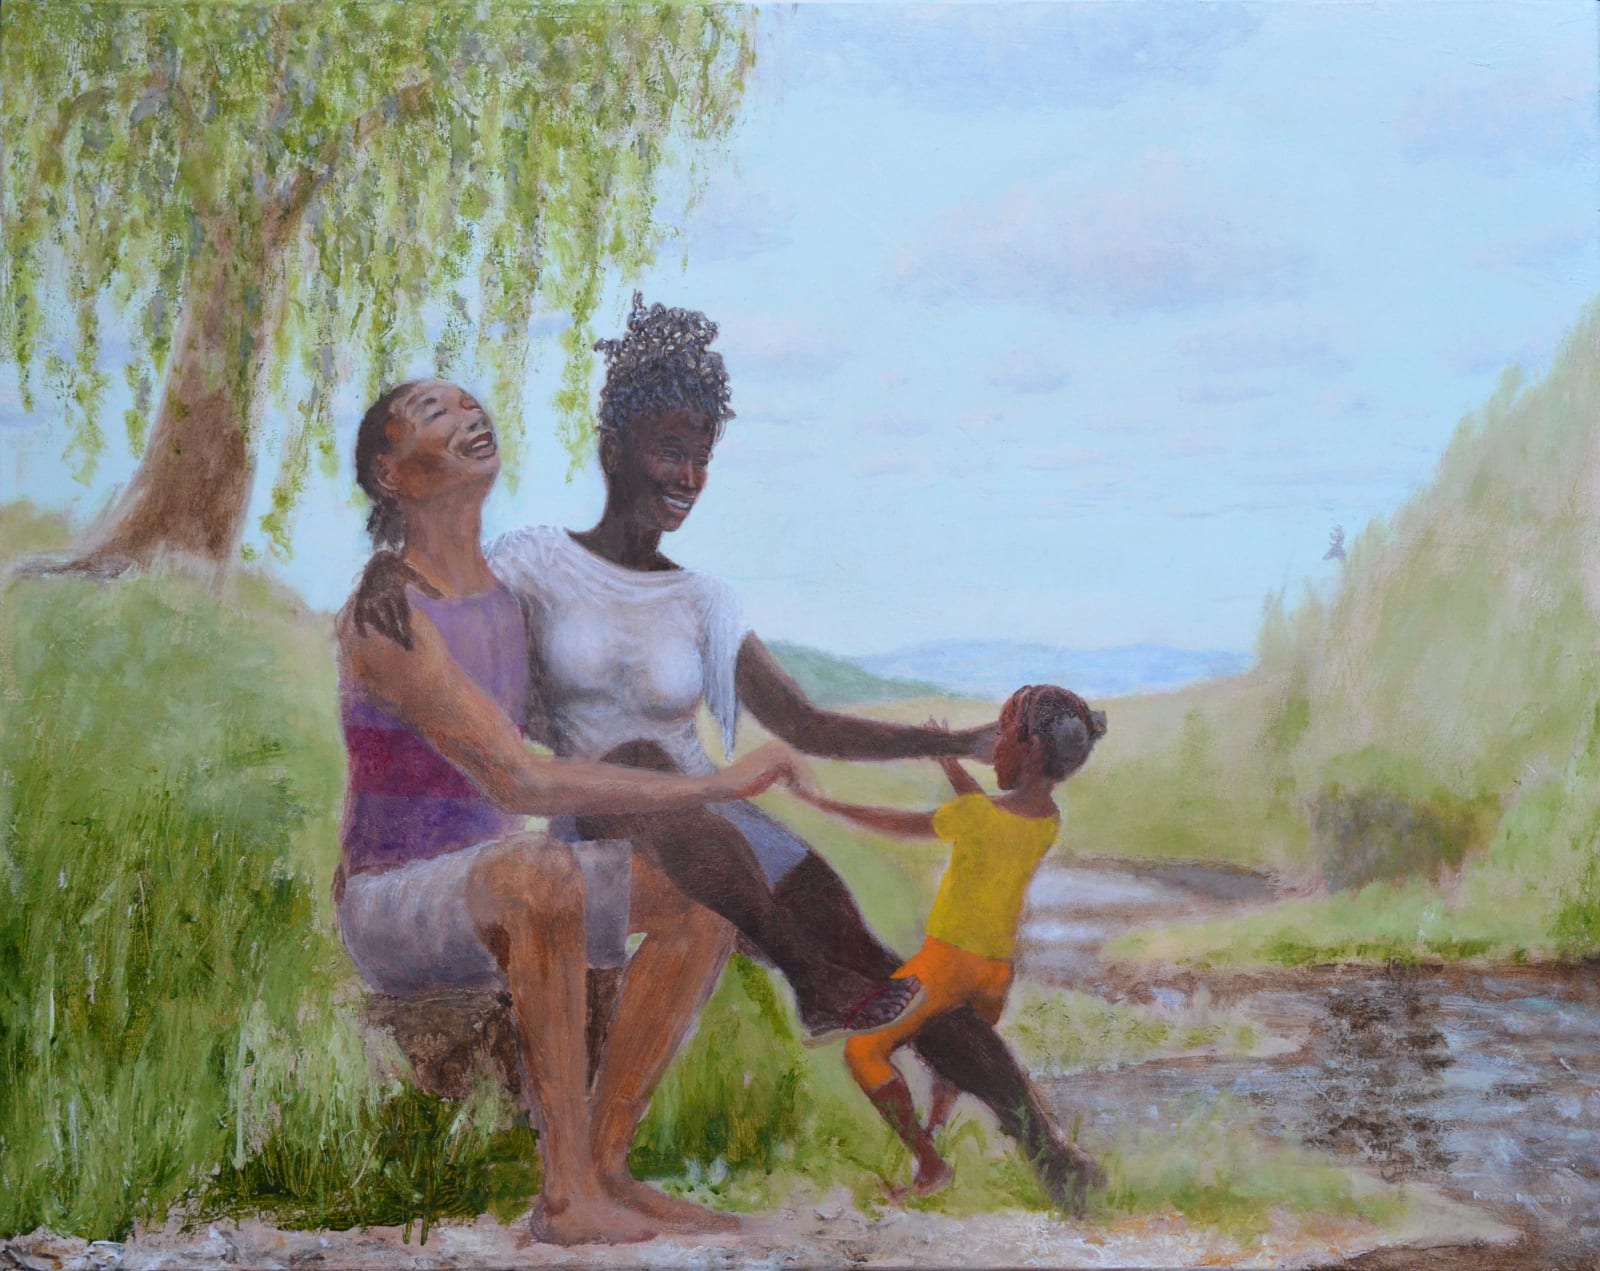 Kimathi Donkor, Idyll of Assae, Nyame and Abena, 2019